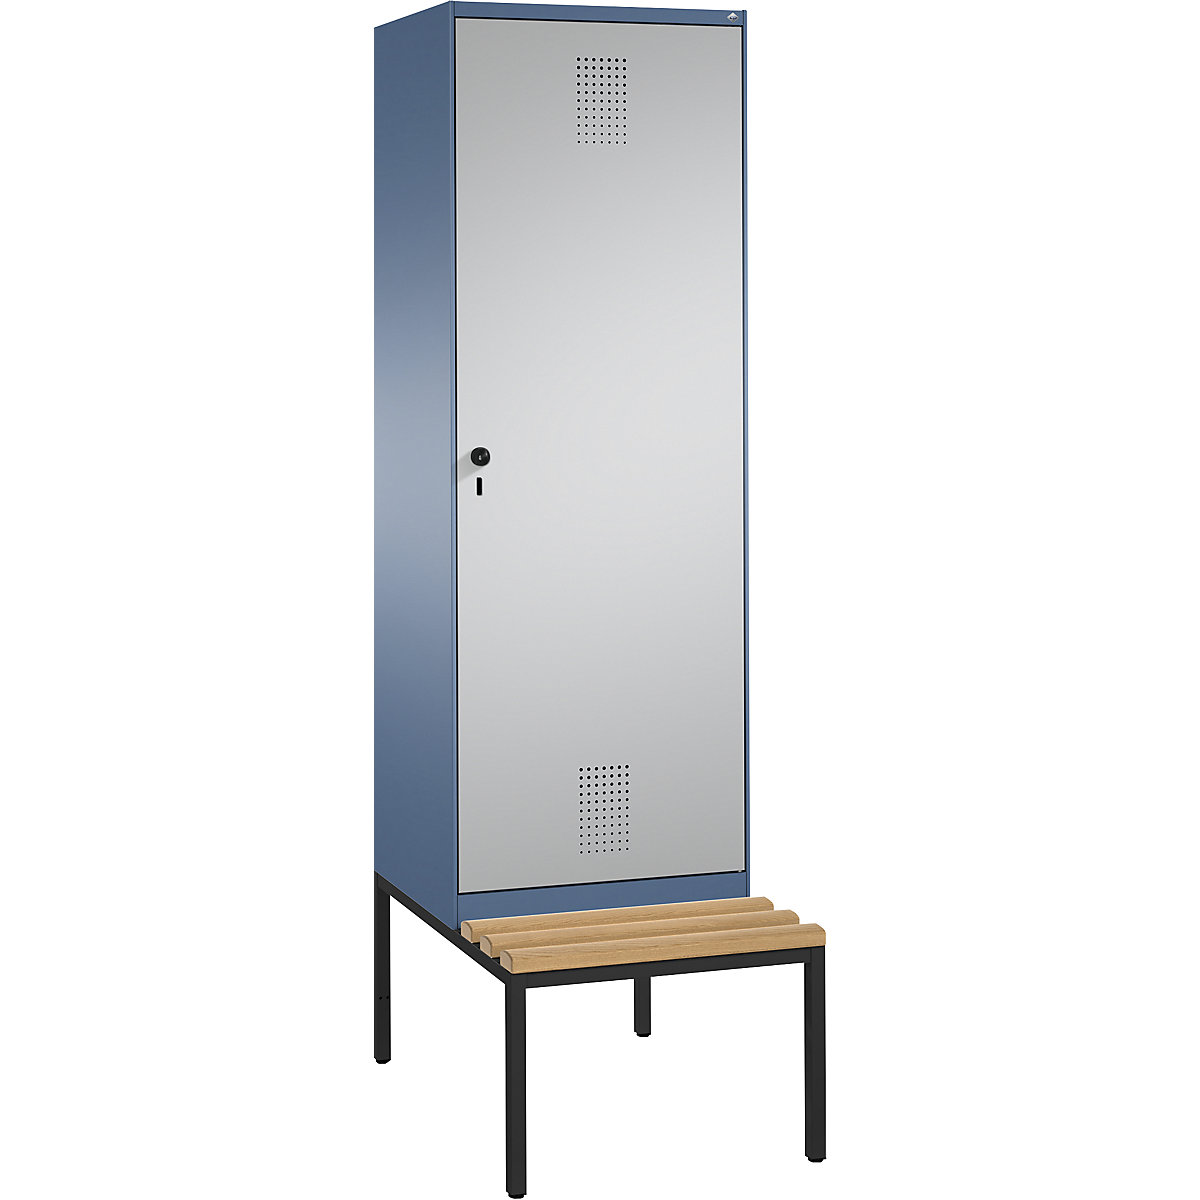 Šatní skříň s lavicí EVOLO s dveřmi přes 2 oddíly – C+P, 2 oddíly, 1 dveře, šířka oddílu 300 mm, modrošedá / bílý hliník-5